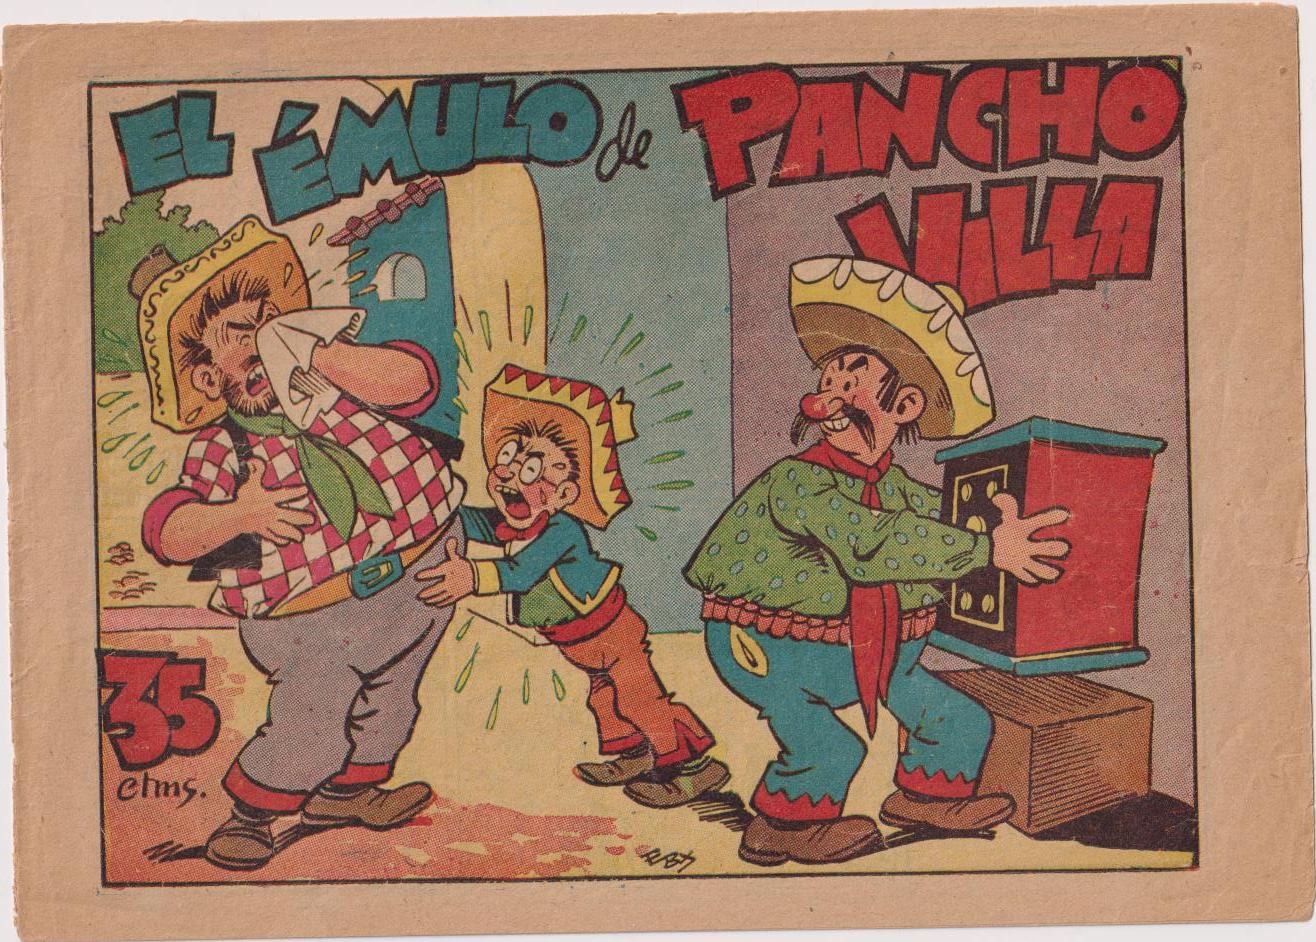 El Émulo de Pancho Villa. Pingo, tongo y Pilongo. Marco 1949